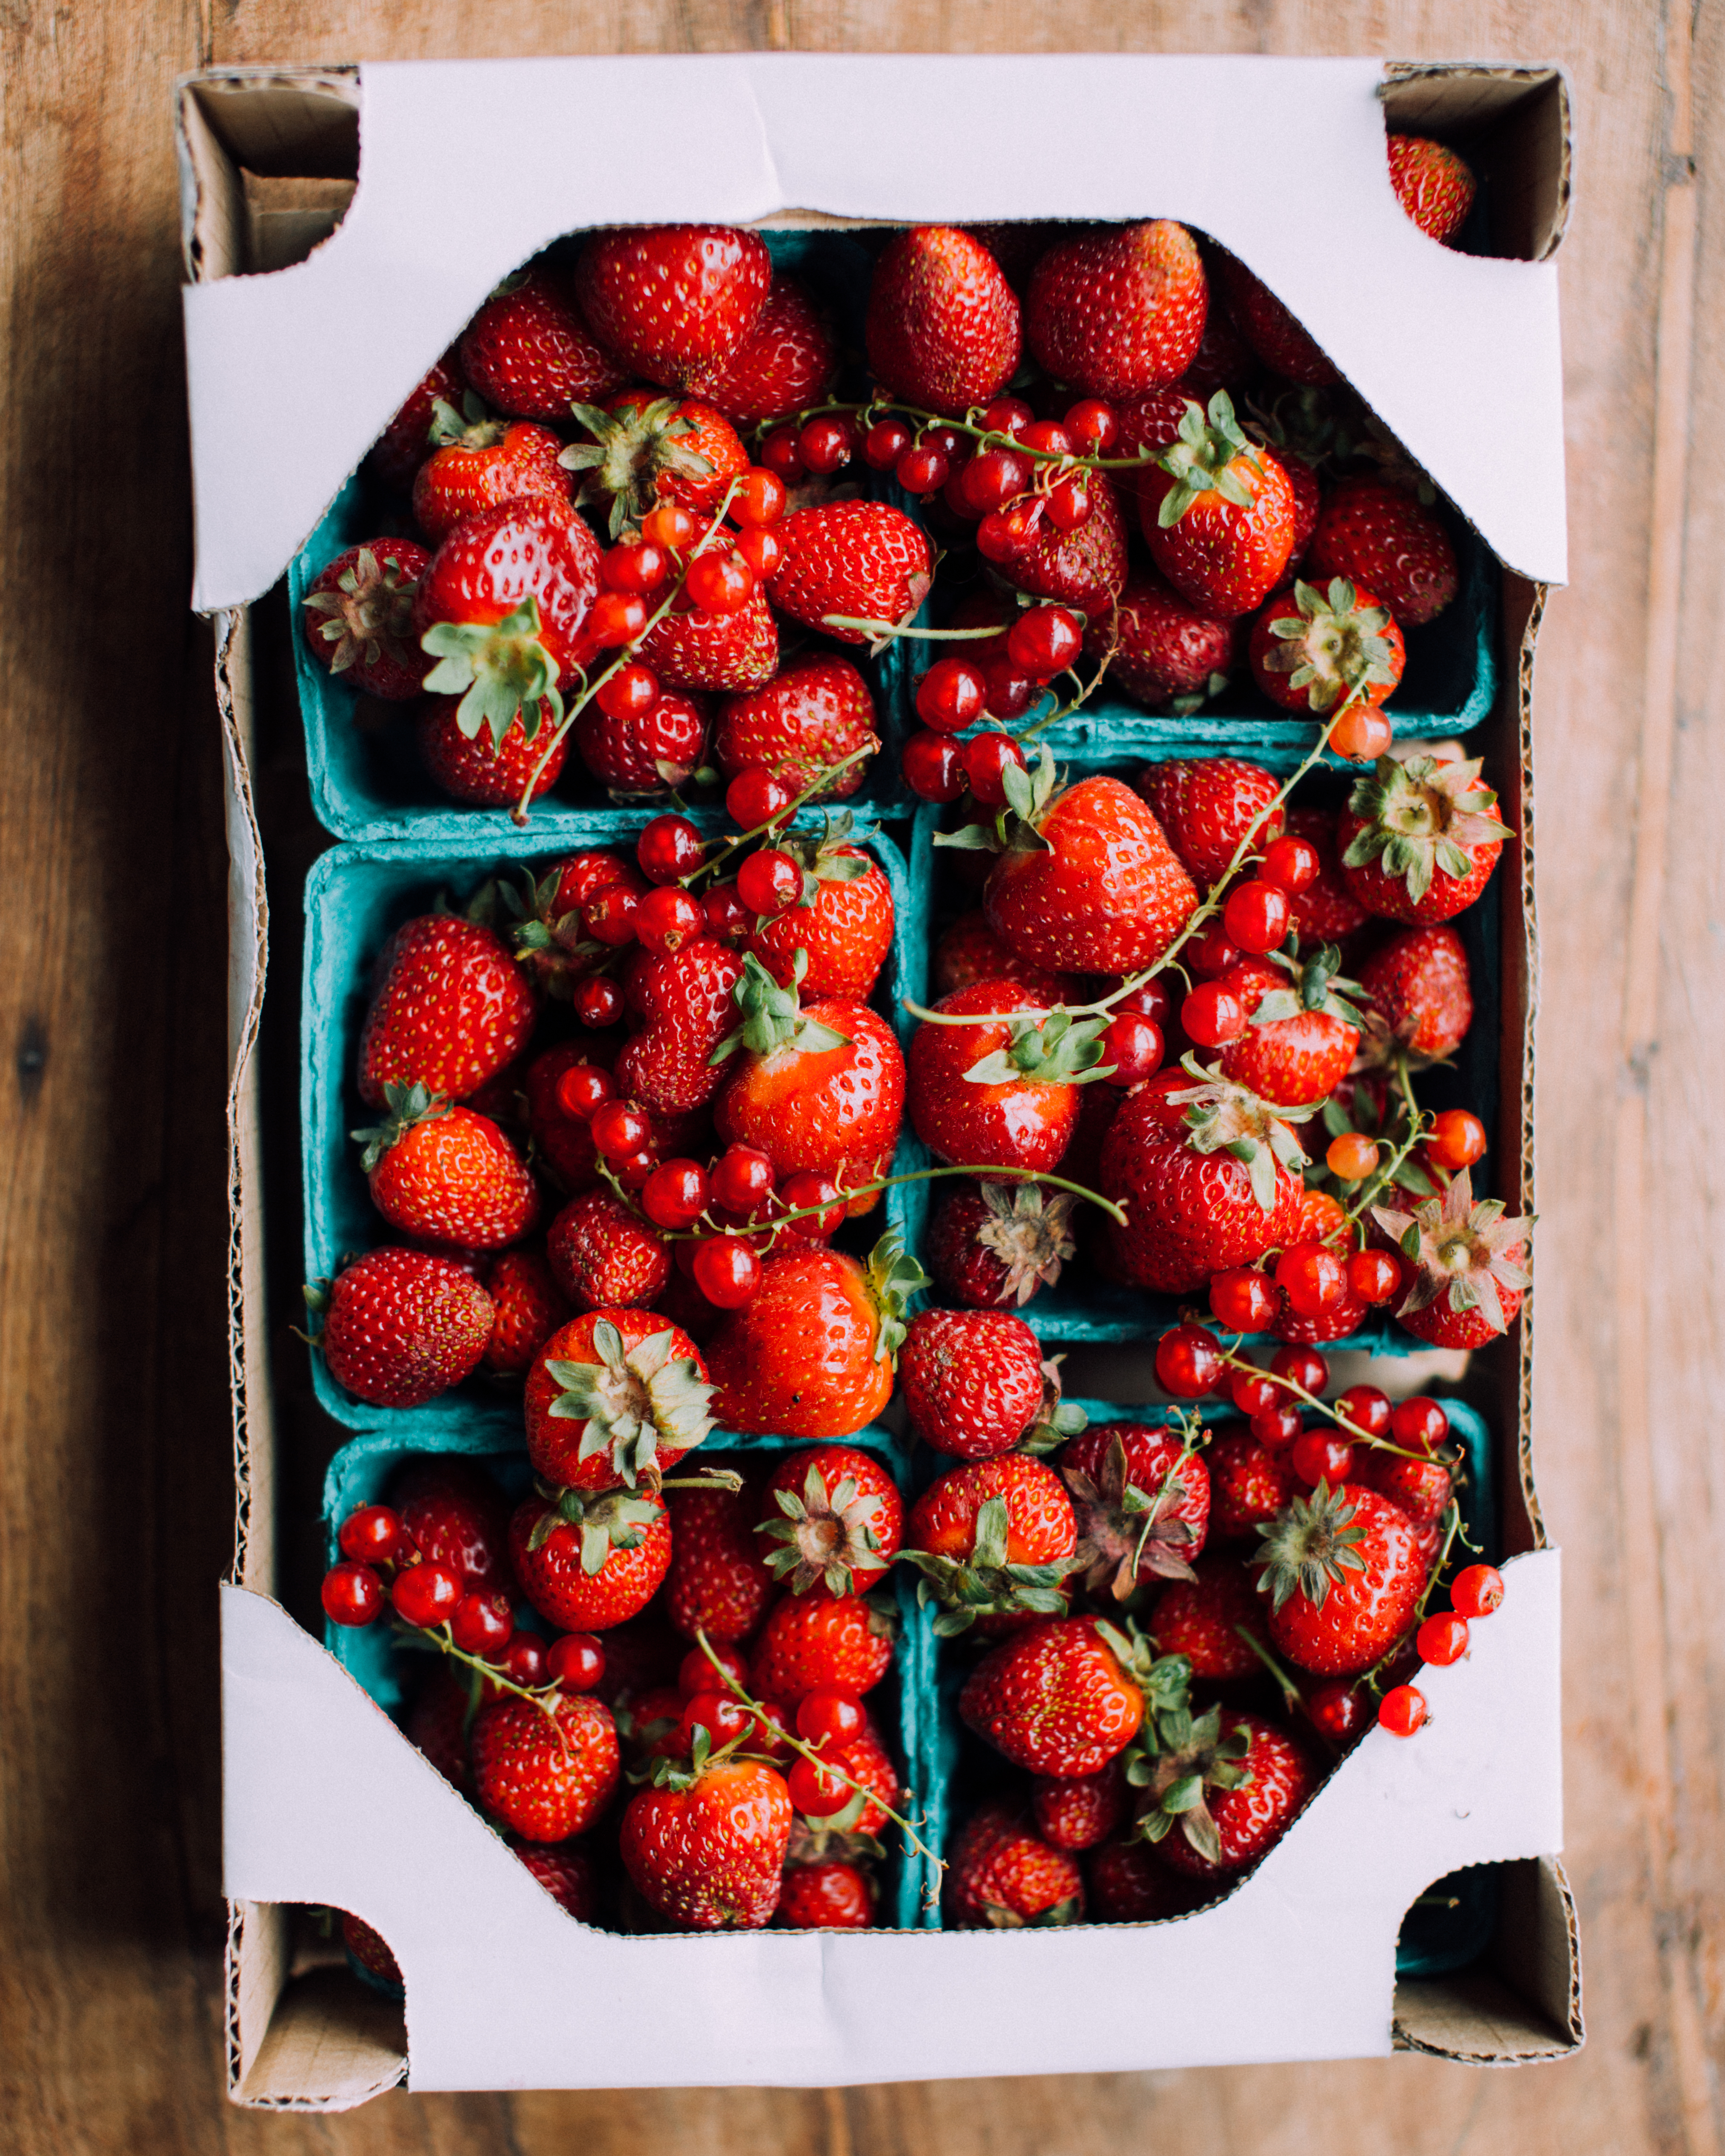 Fresh strawberries for making strawberry cobbler.